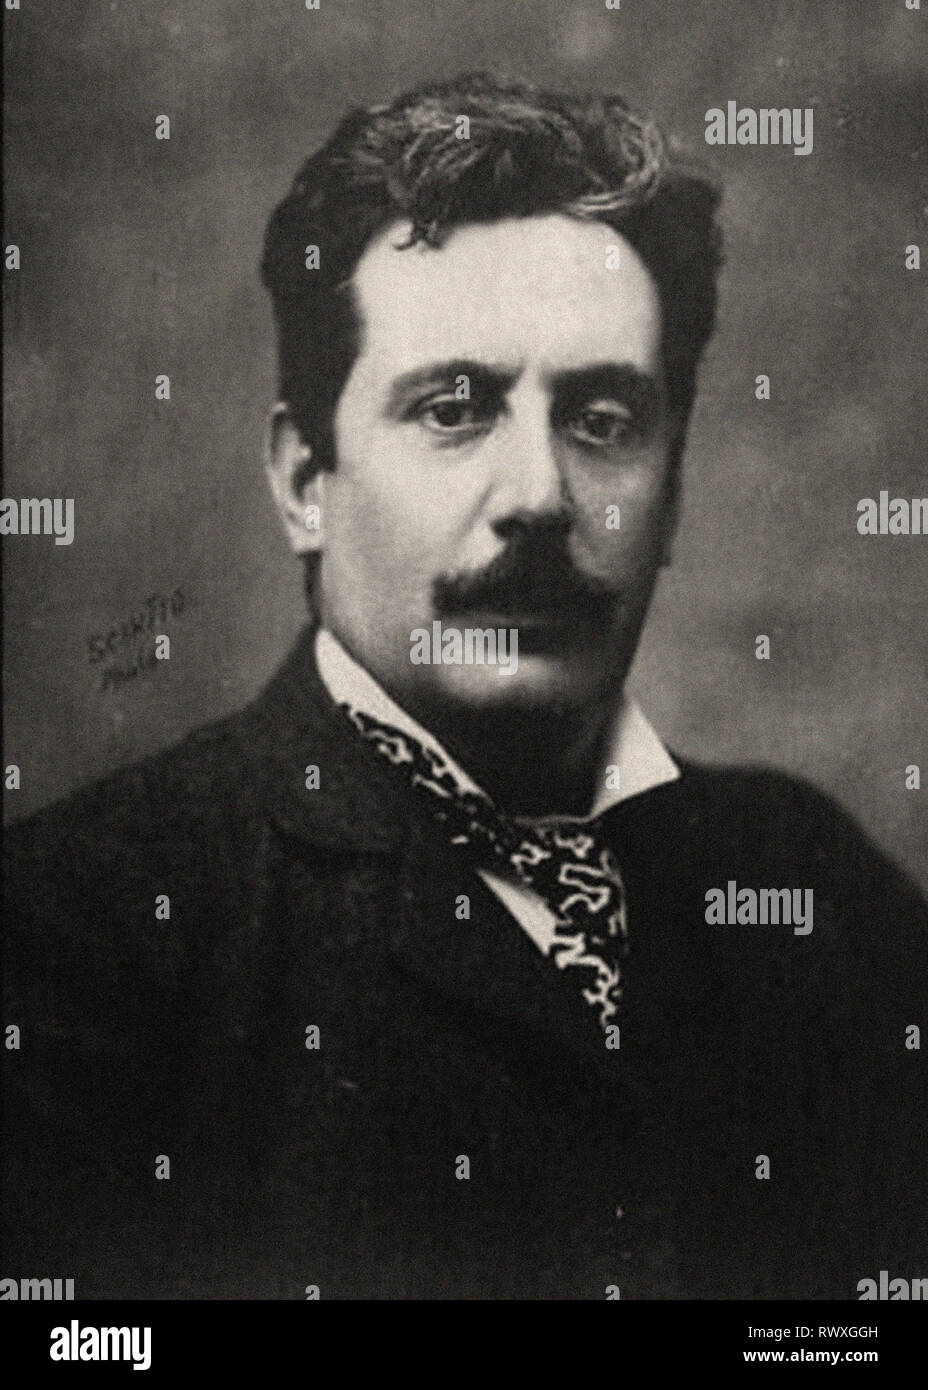 Ritratto fotografico di Puccini Foto Stock